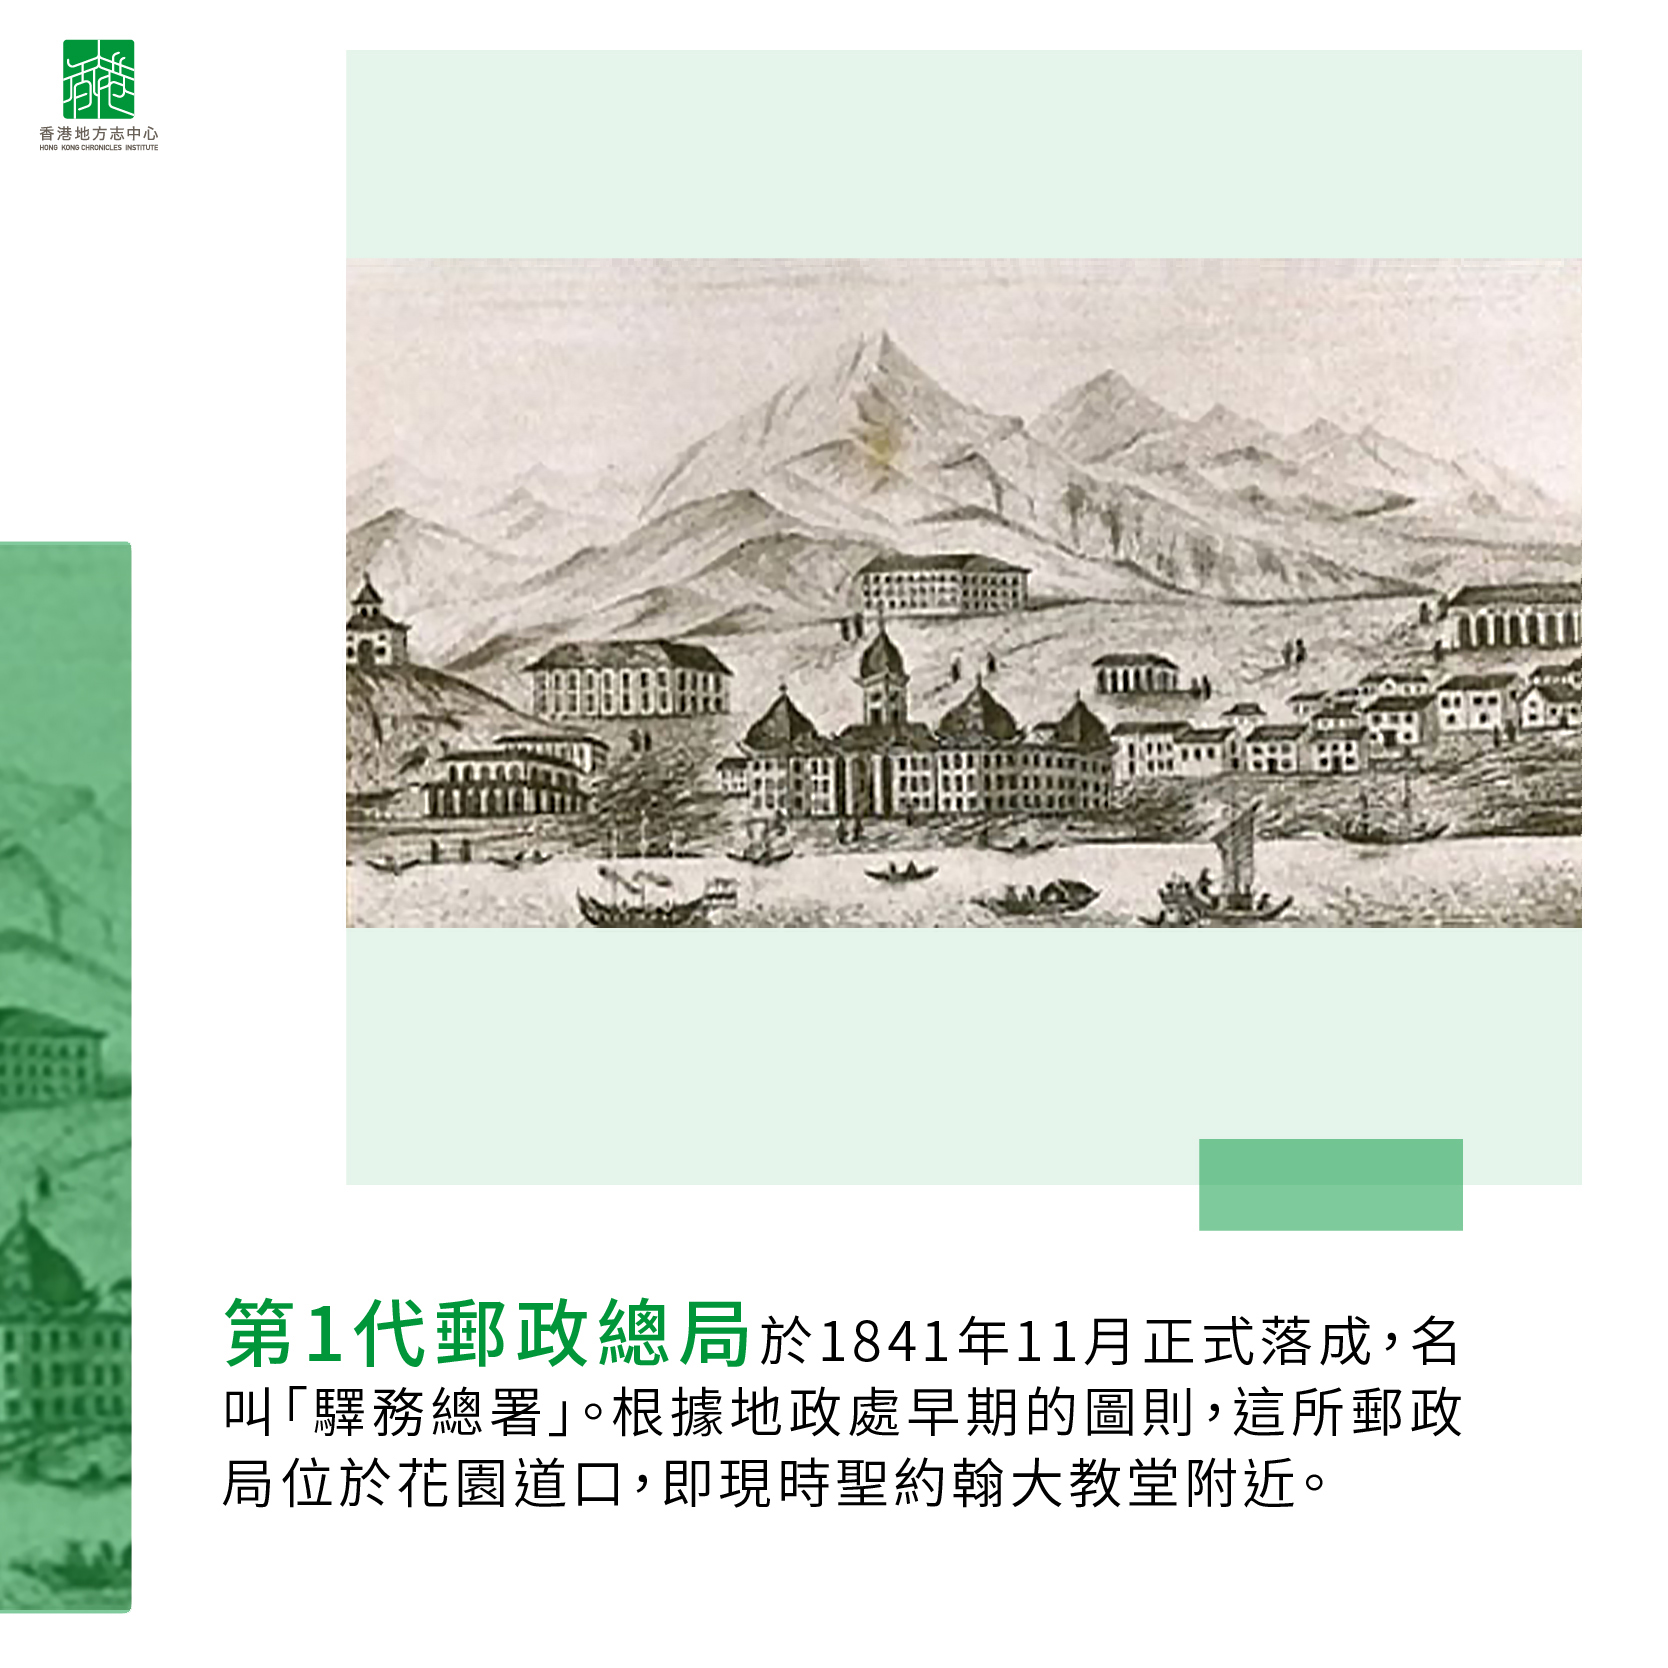 1841年11月，香港首間郵政局正式落成，名叫「驛務總署」